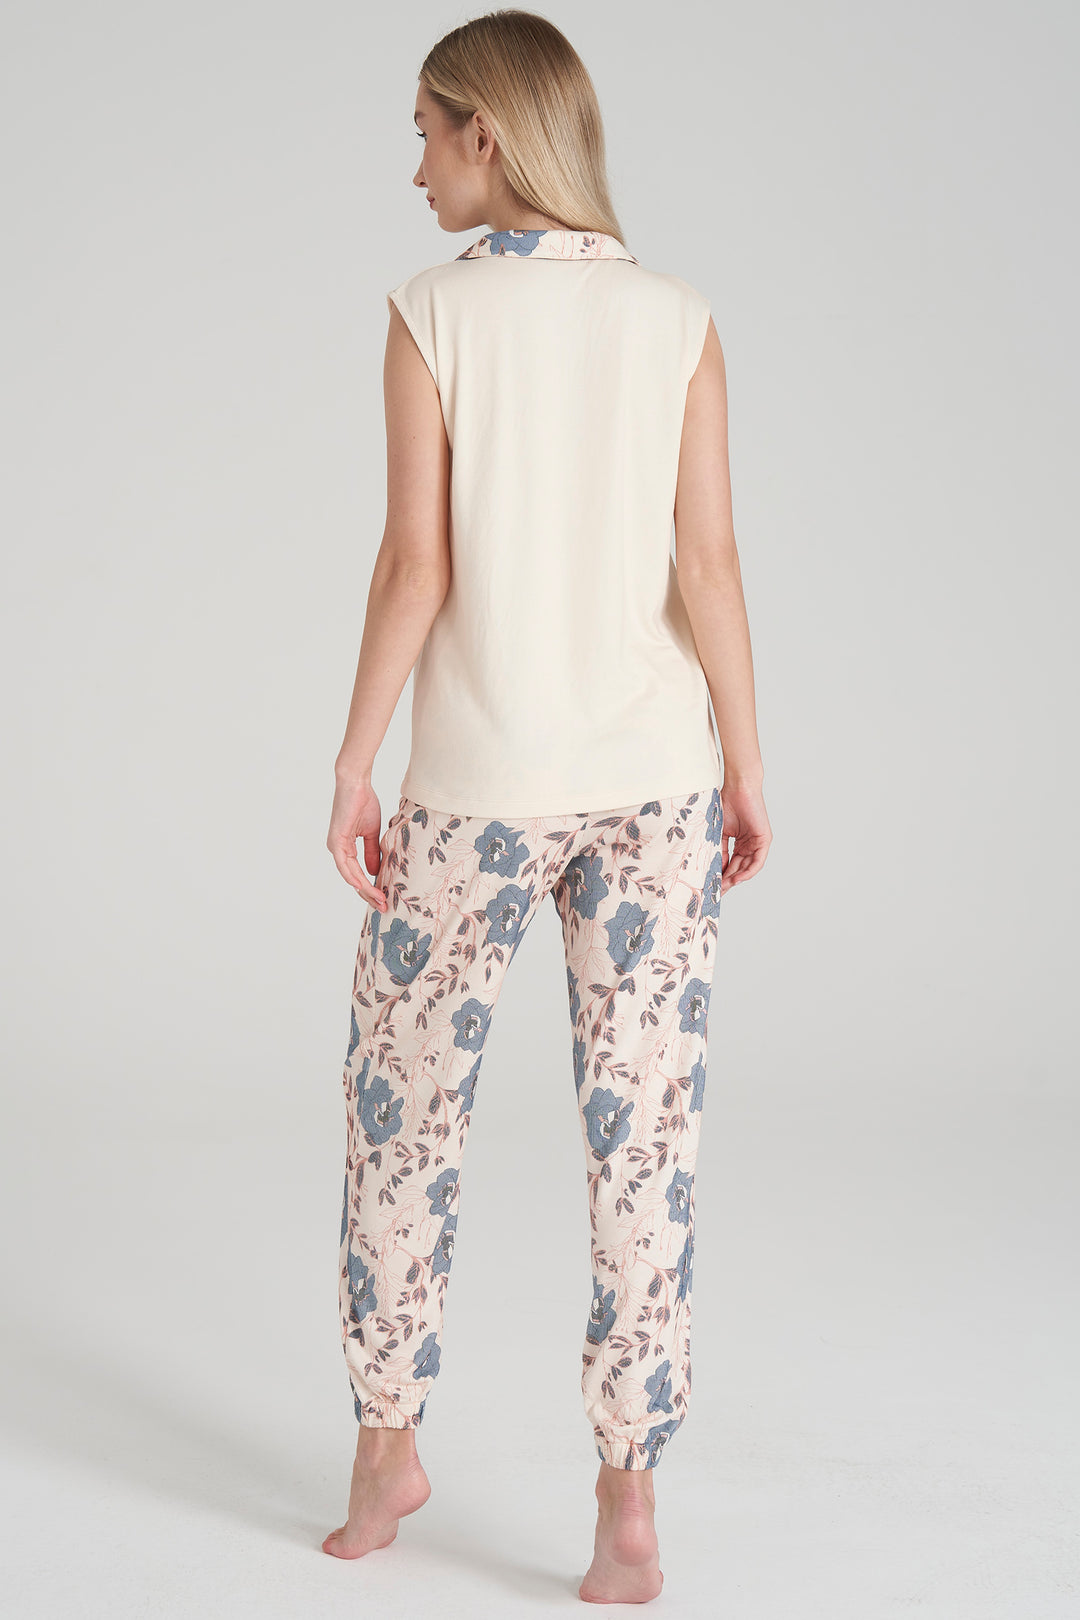 Floral Sleeveless Pajama Set